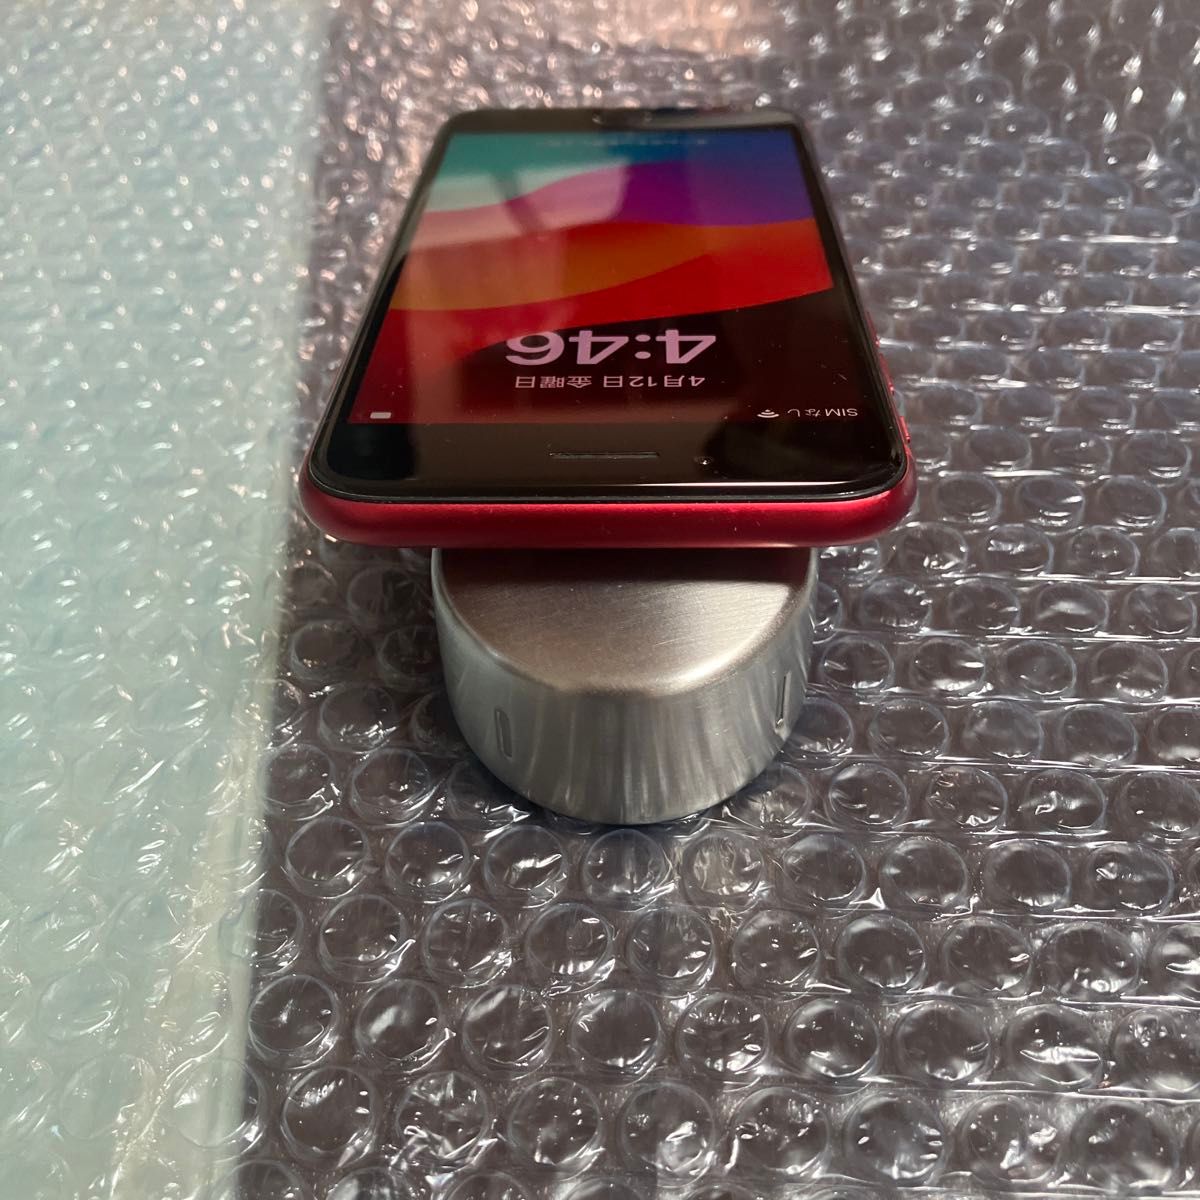 美品 iPhone SE2 product RED 64GB SIMフリー バッテリー最大容量100